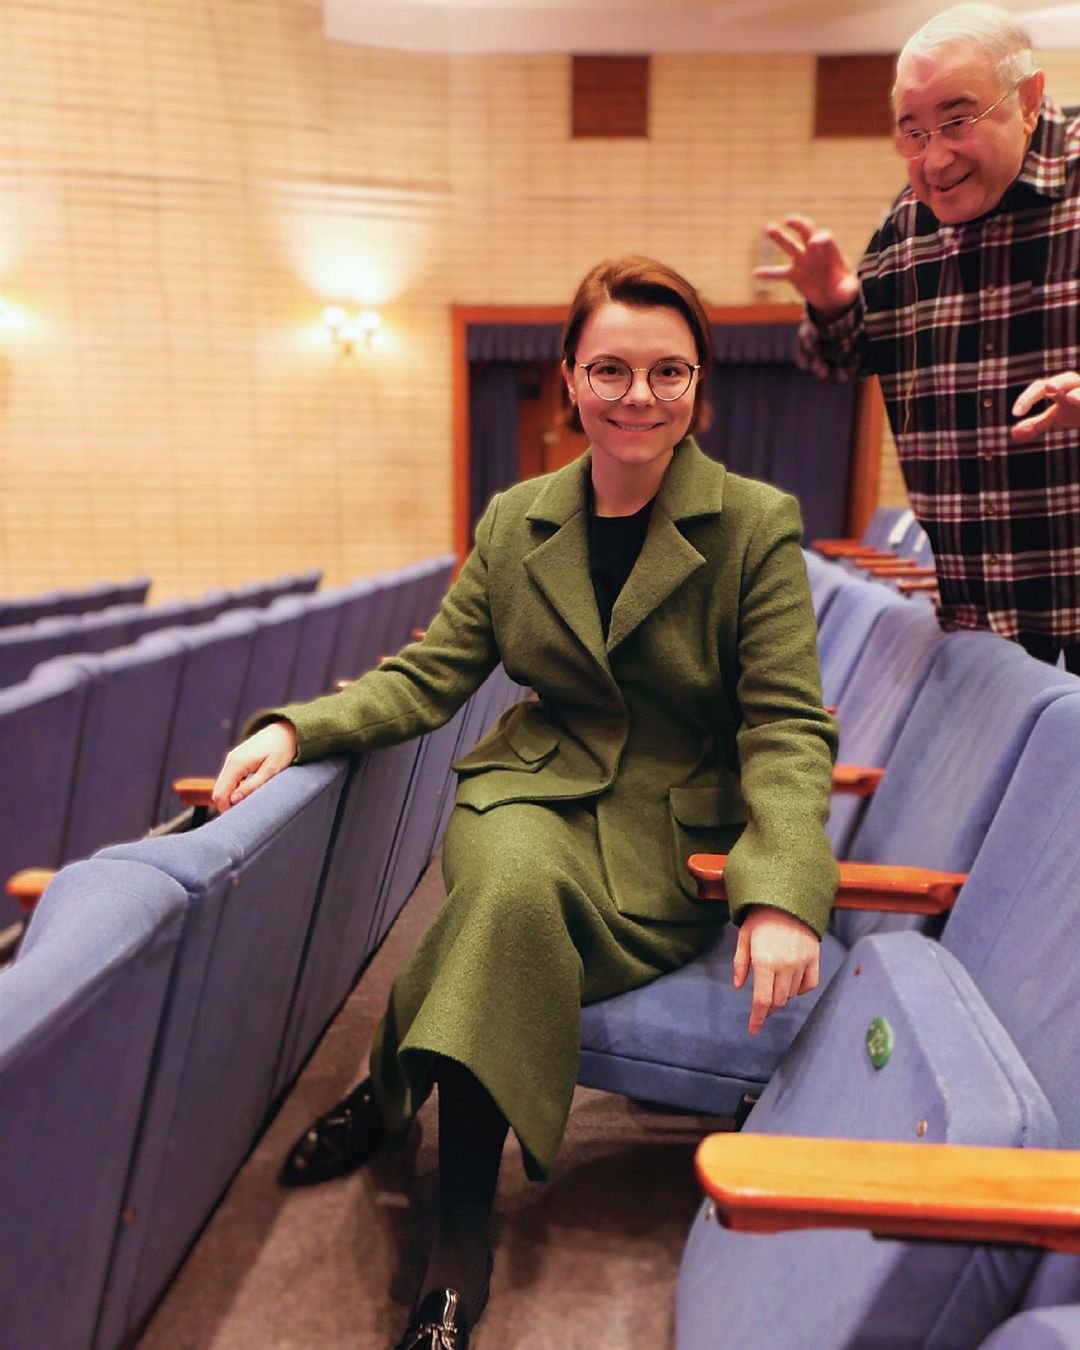 Татьяна Брухунова поделилась веселым фото с Евгением Петросяном